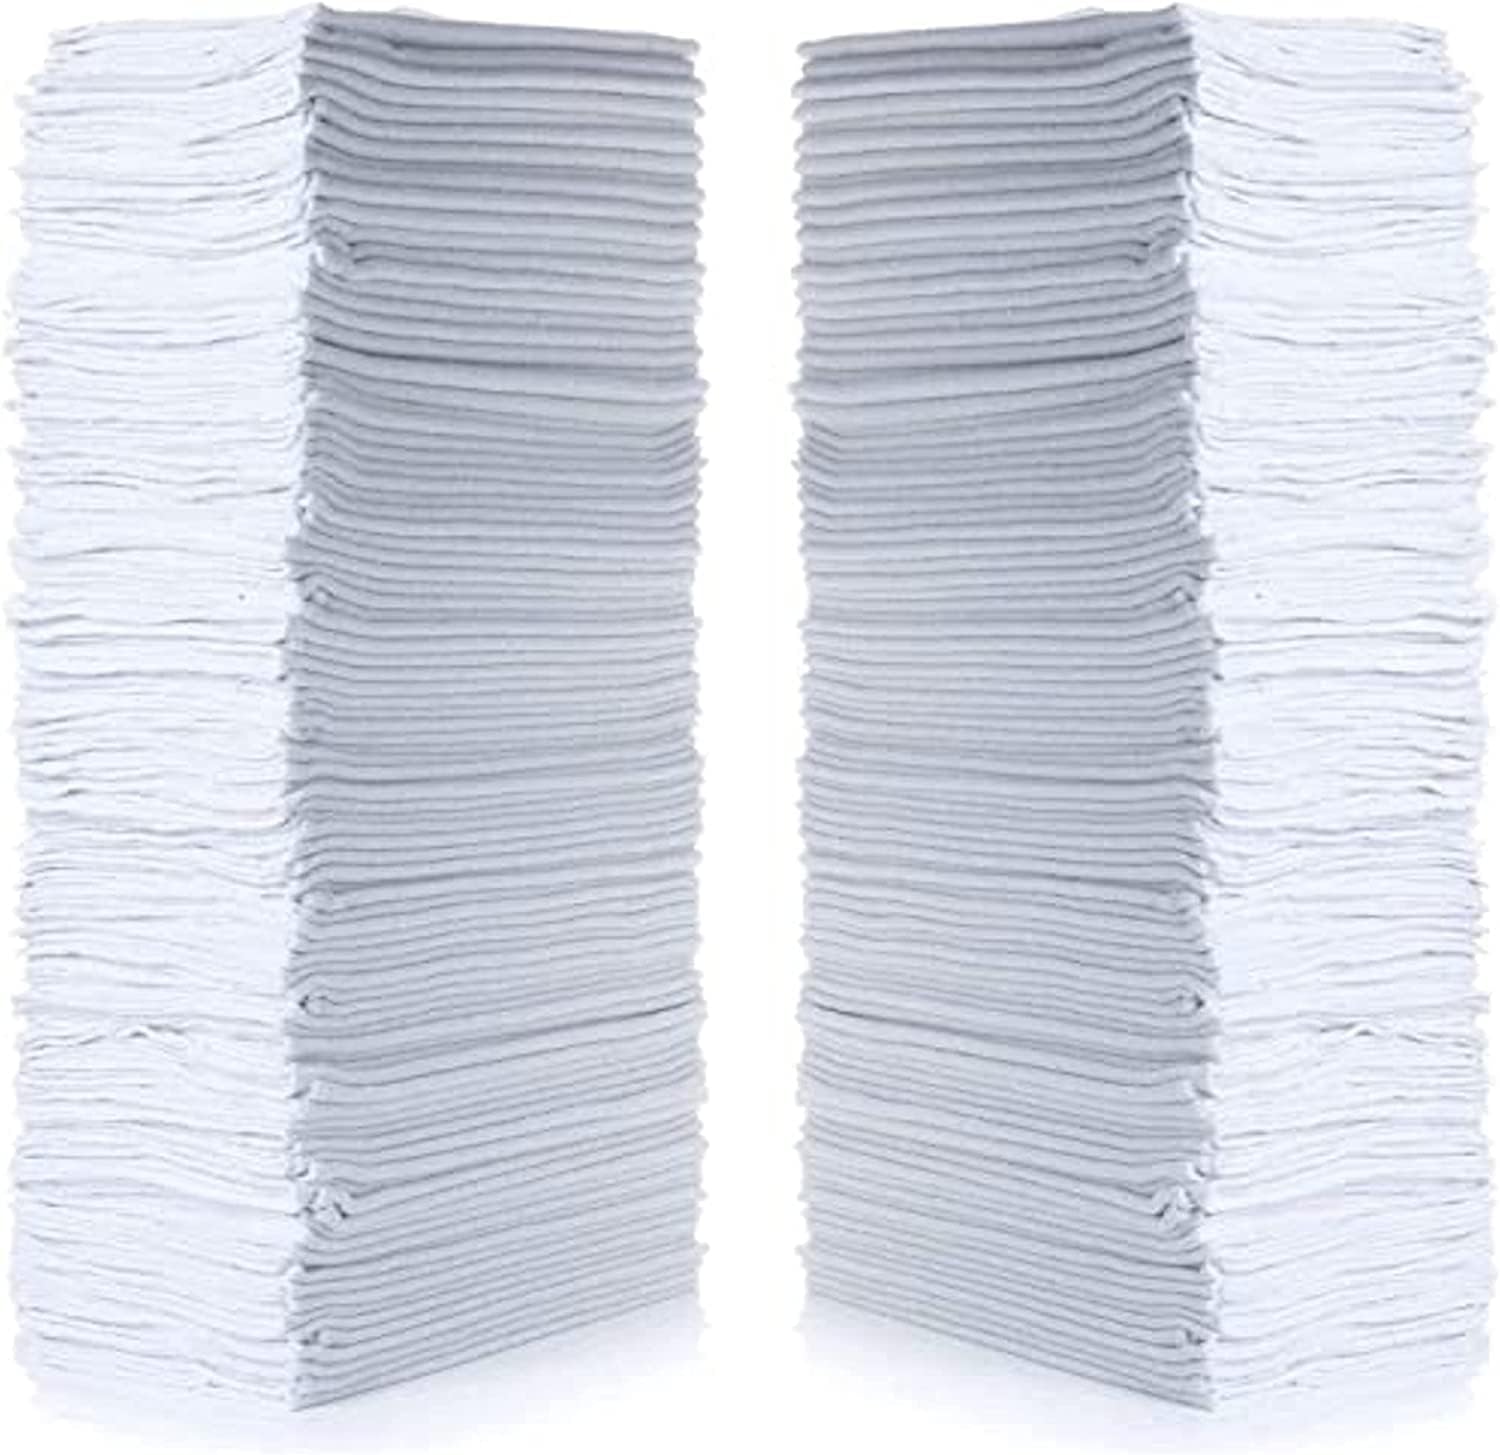 Cleaning Solutions Juego de toallas reutilizables de algodón (50 unidades, 12.0